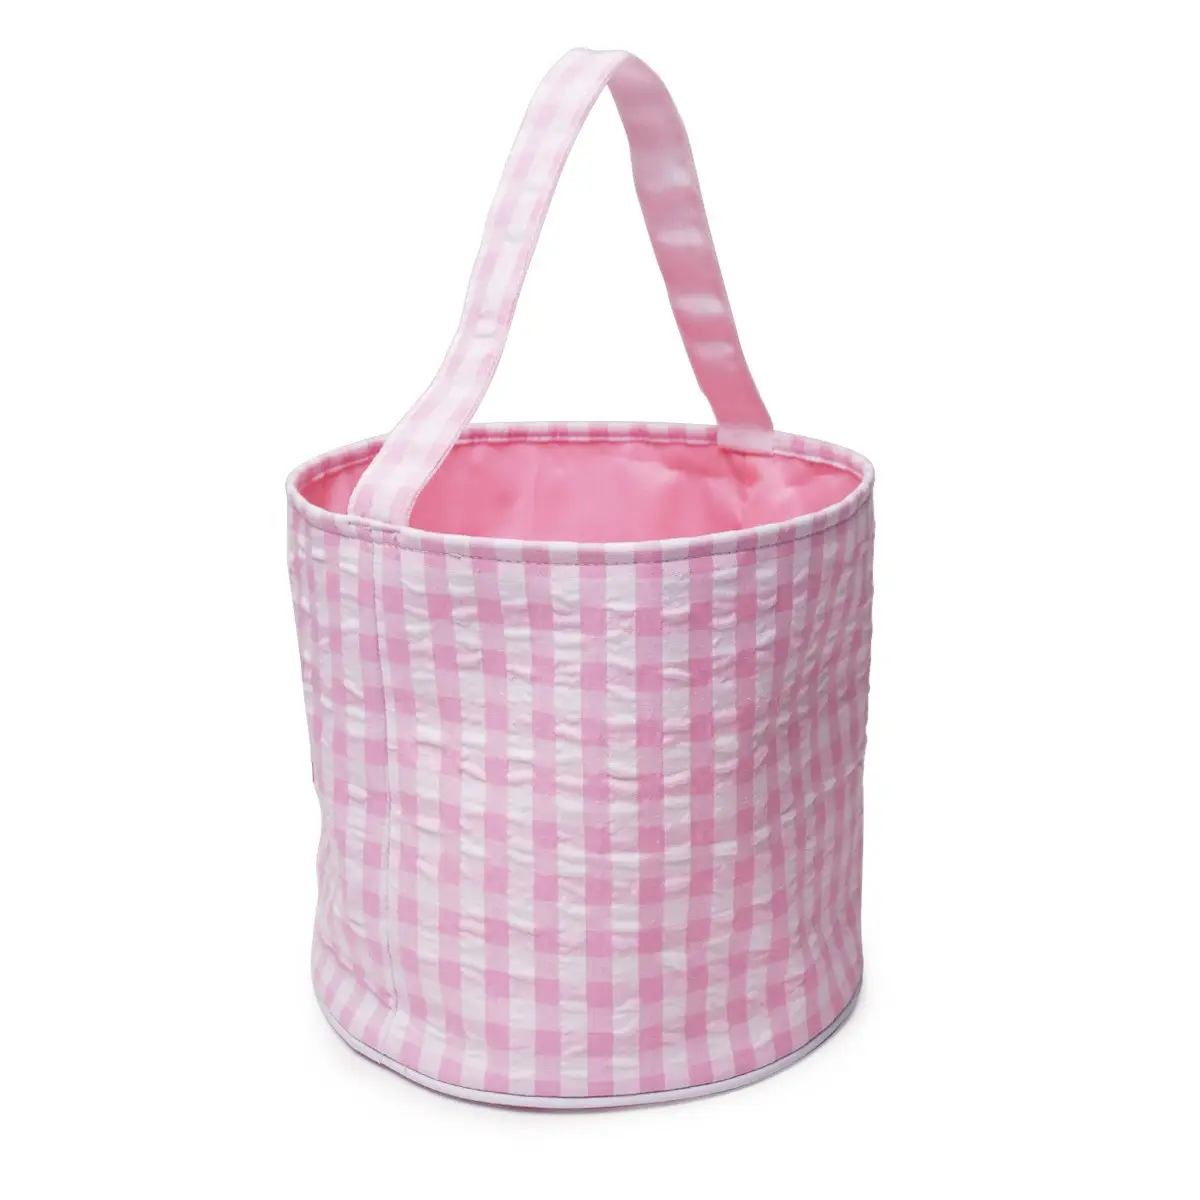 Striscia di pasqua Tote Bag per regalo per bambini coniglietto di pasqua Candy Egg Storage Bag sublimazione pasqua Basket borsa Seersucker Tote Bag